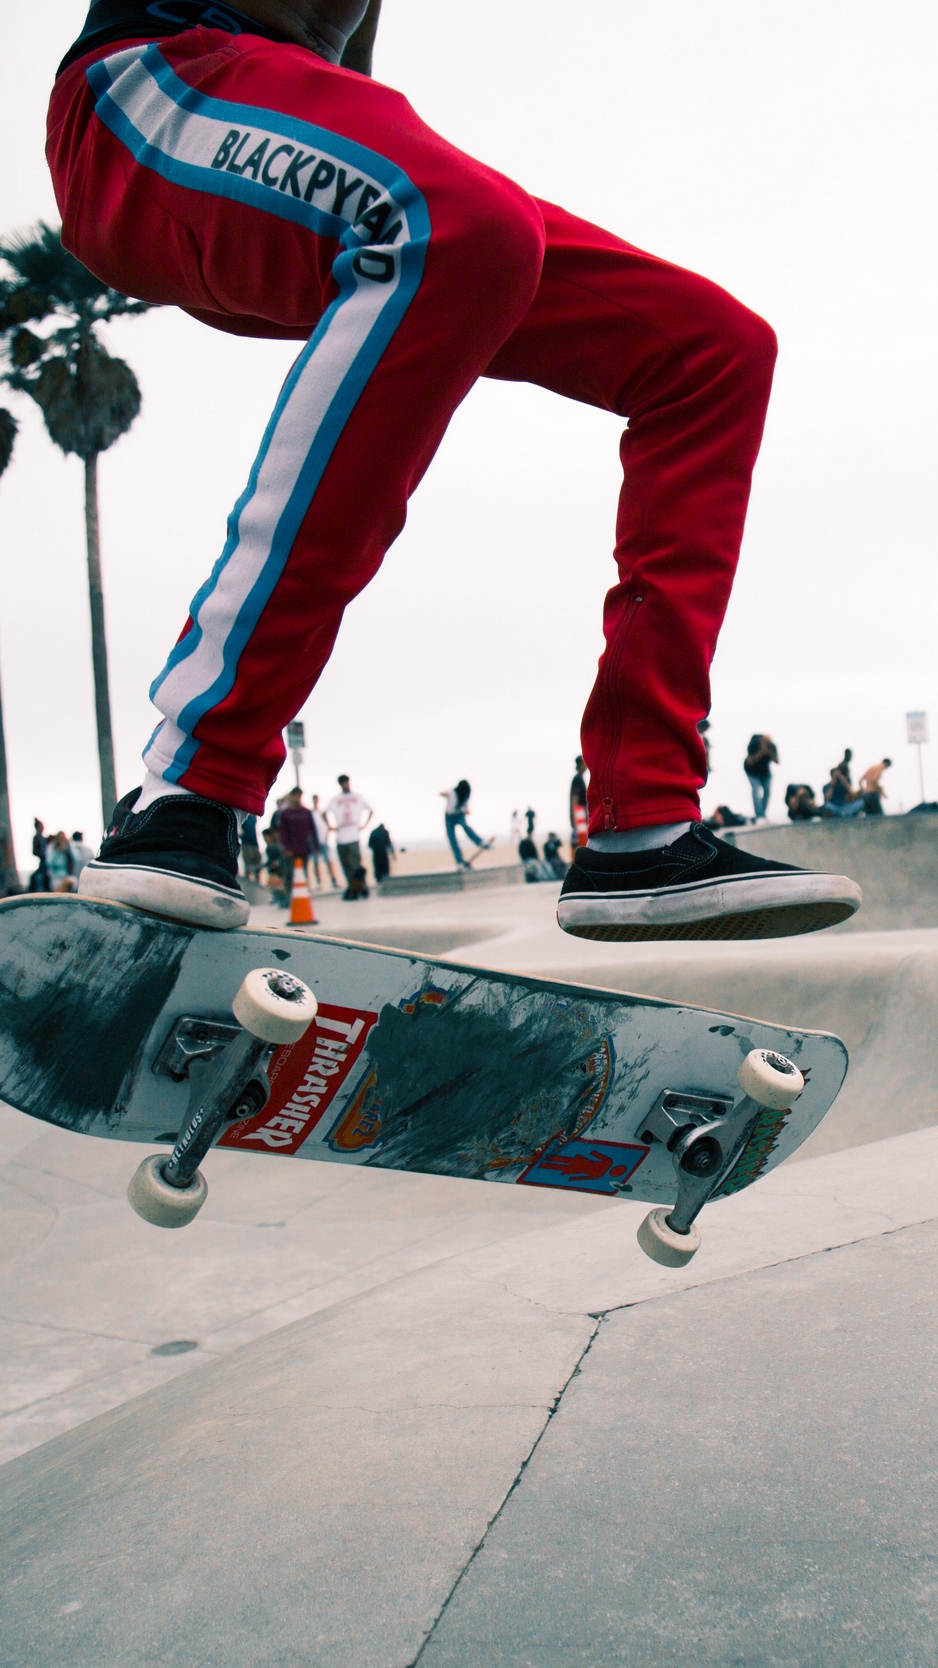 Wallpaper Skate, Skater, Jump, Trick, Skate Park, Venice, - Skate Background - HD Wallpaper 